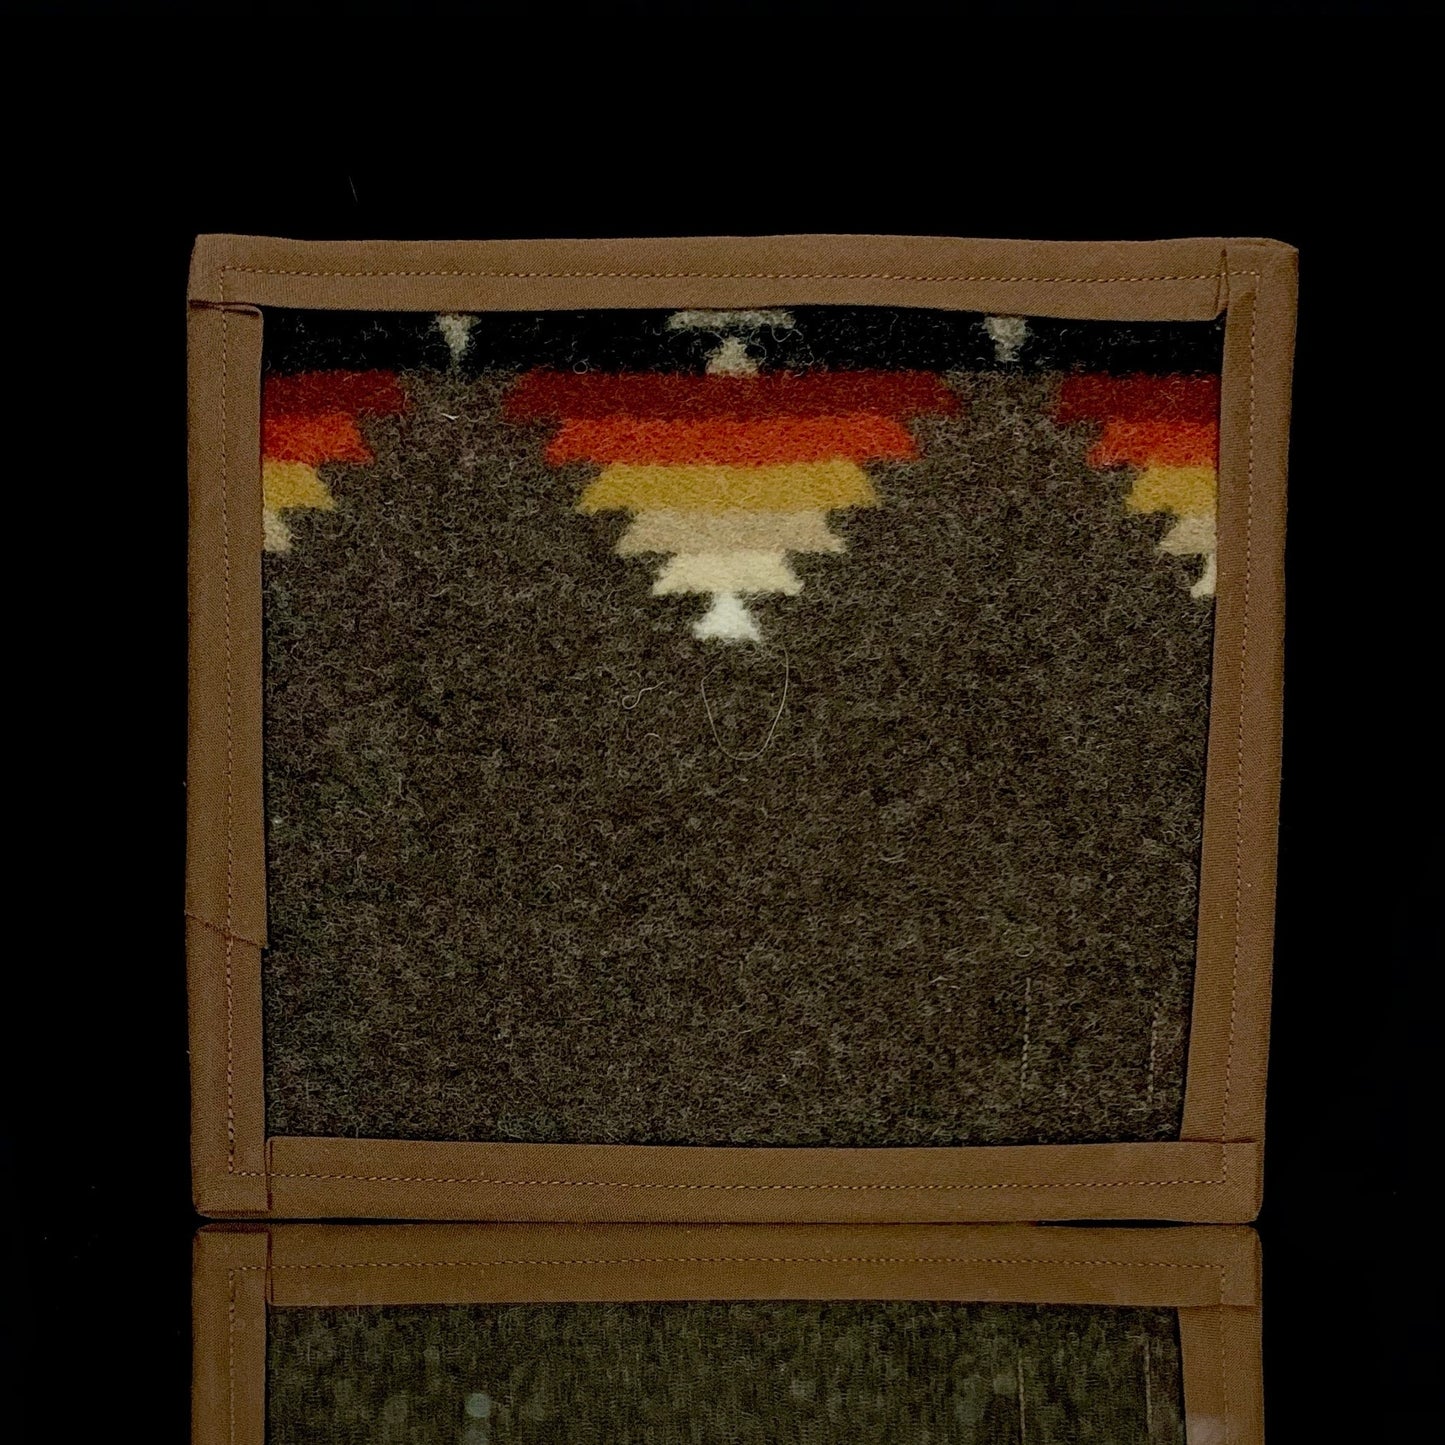 7” x 6” Pendleton mat by Wook Wear